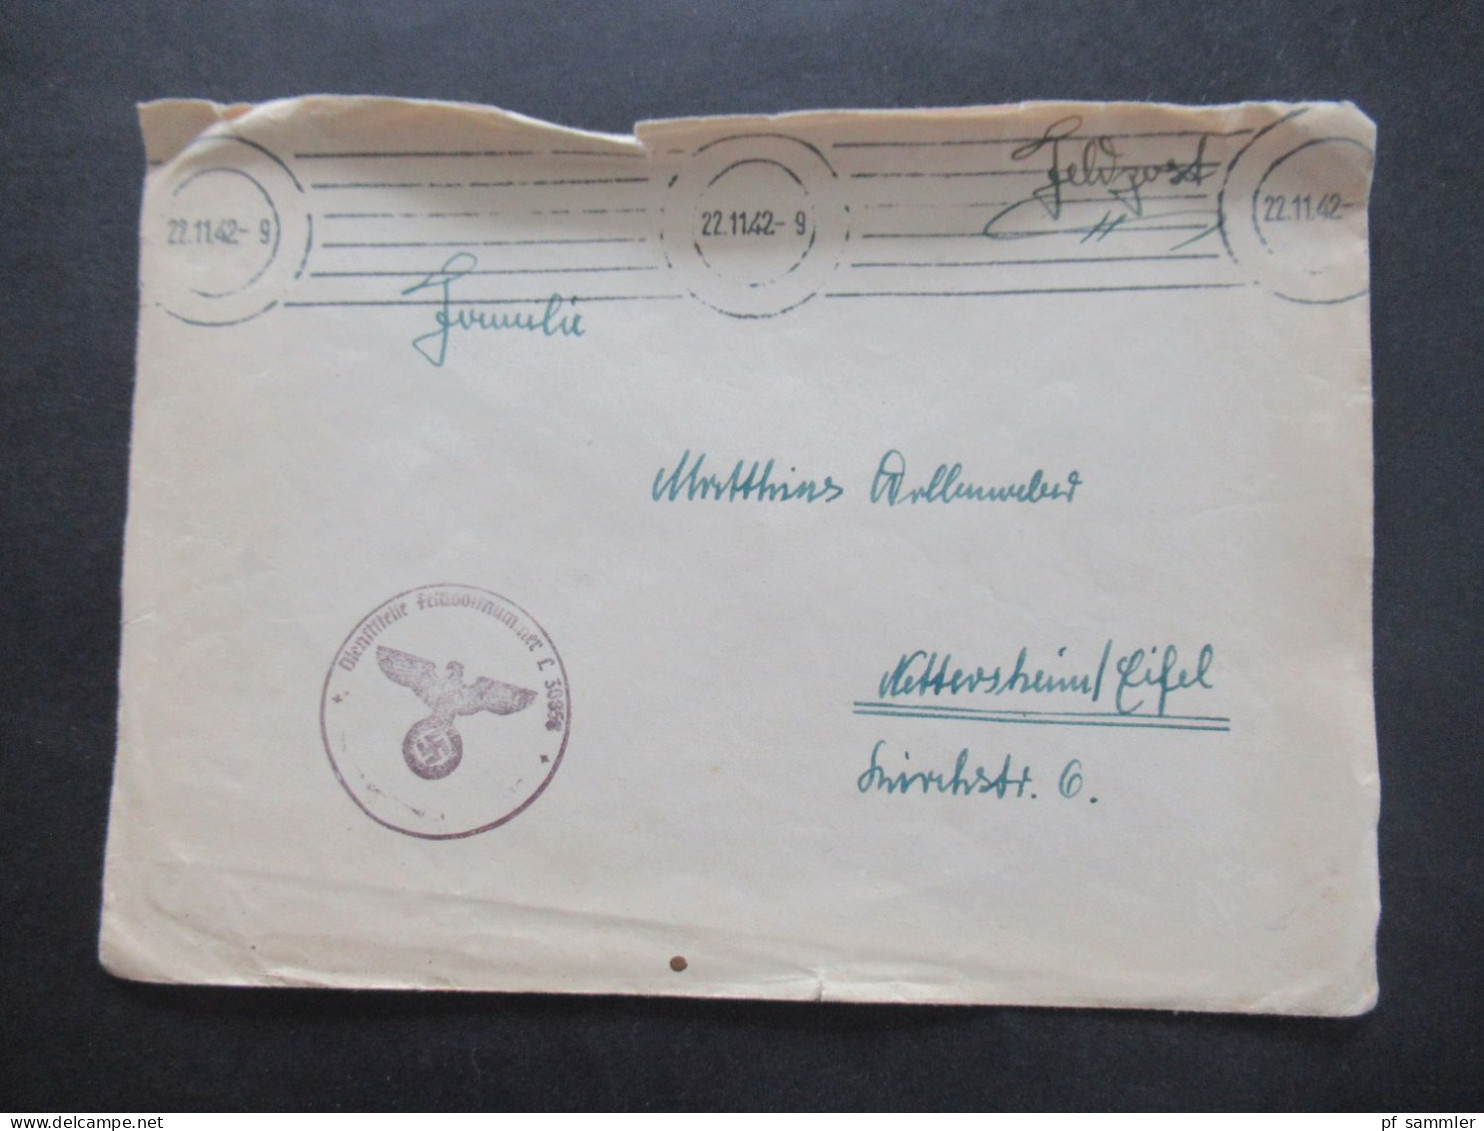 Feldpost 2.WK Posten mit vielen Belegen und 4 Fotos! 24.12.1939 - 22.6.1944 Luftwaffe / Luftgaupostämter / Fliegerhorst